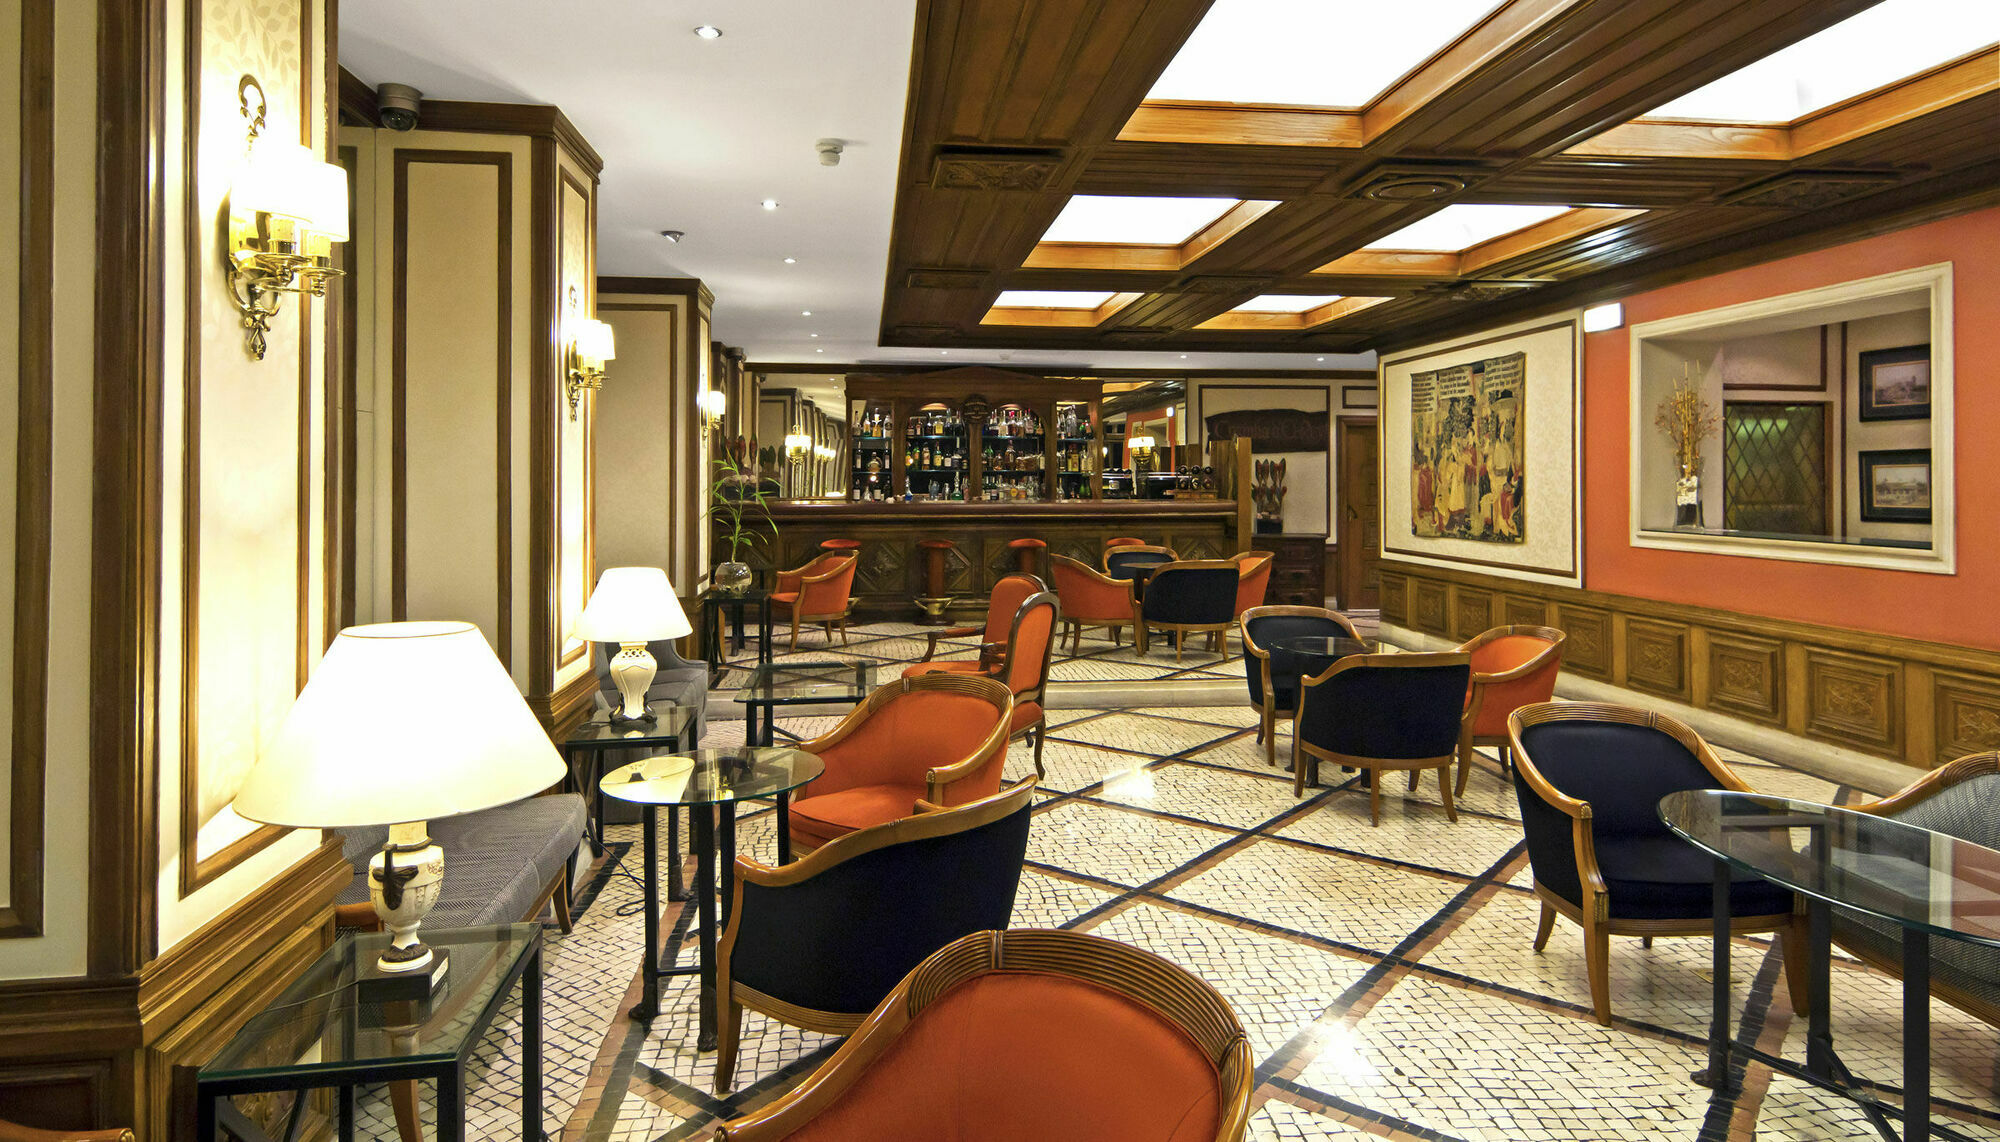 Sana Rex Hotel Lizbona Zewnętrze zdjęcie